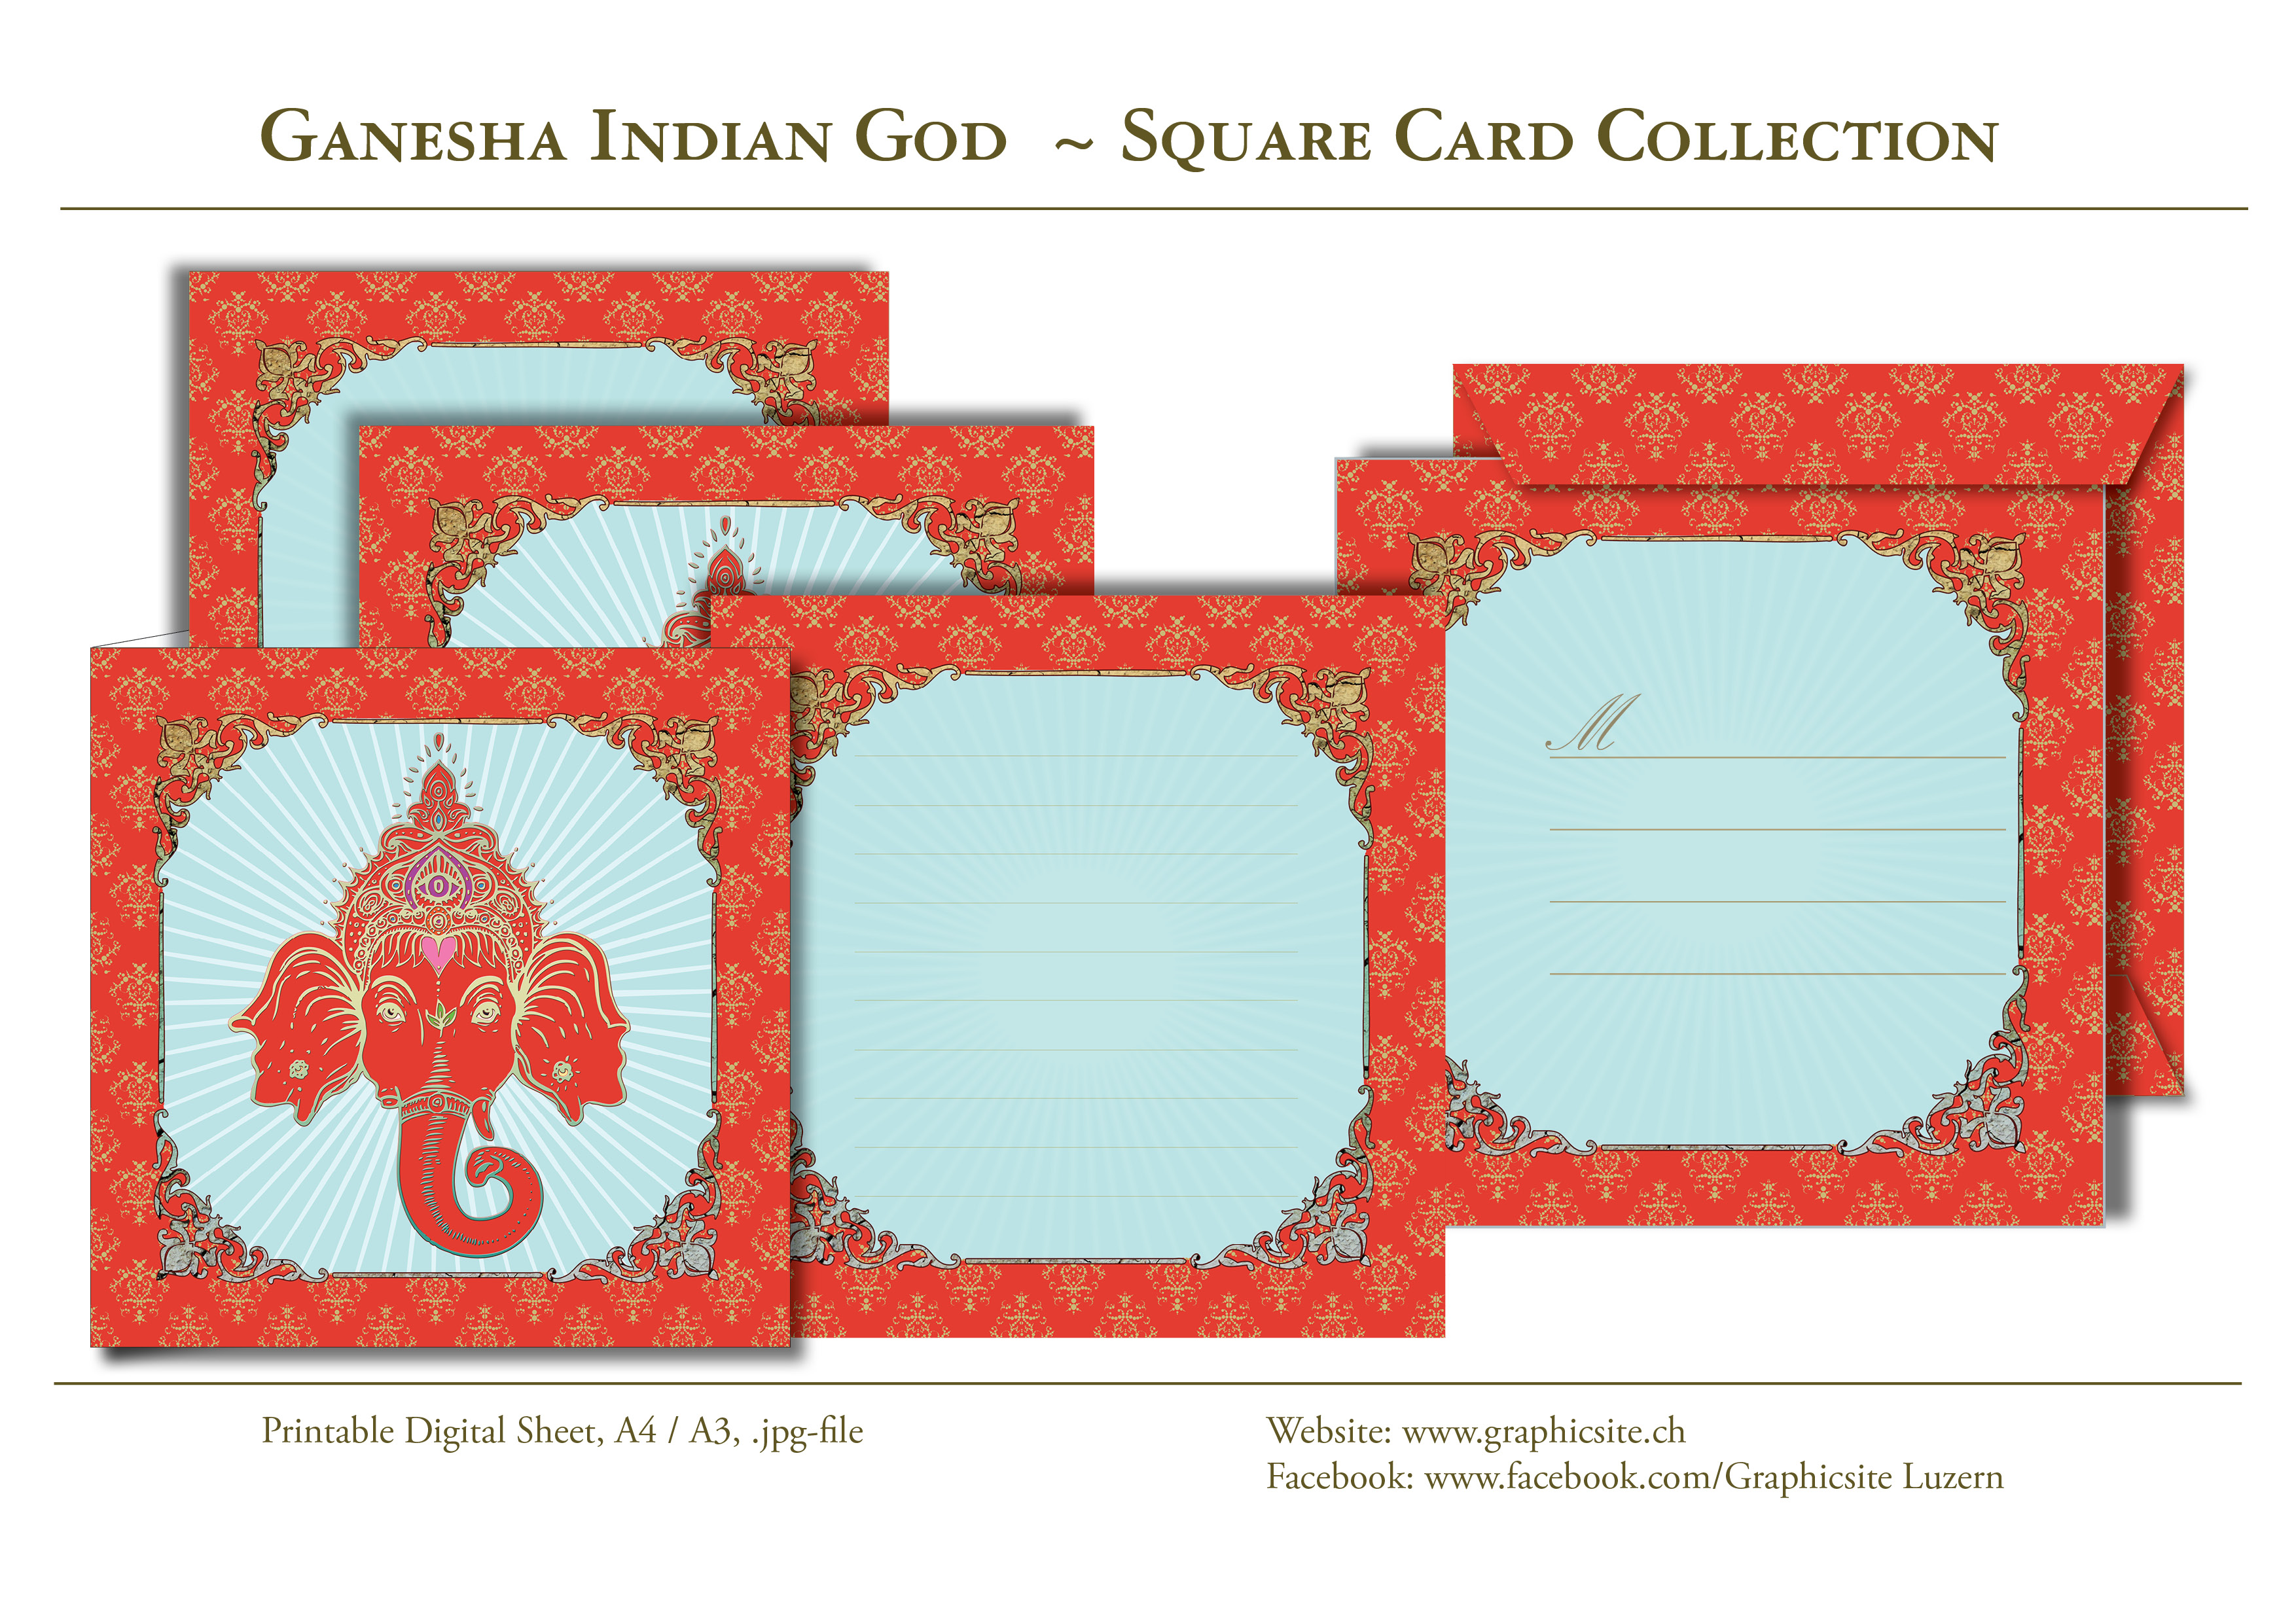 Ganesha Indischer Gott -  Kartenkollektion - Kuvert, Indien,  Yoga, Meditation, druckbare Karten Quadratisch, download, Graphic Design Luzern, Grafiker Luzern, Schweiz